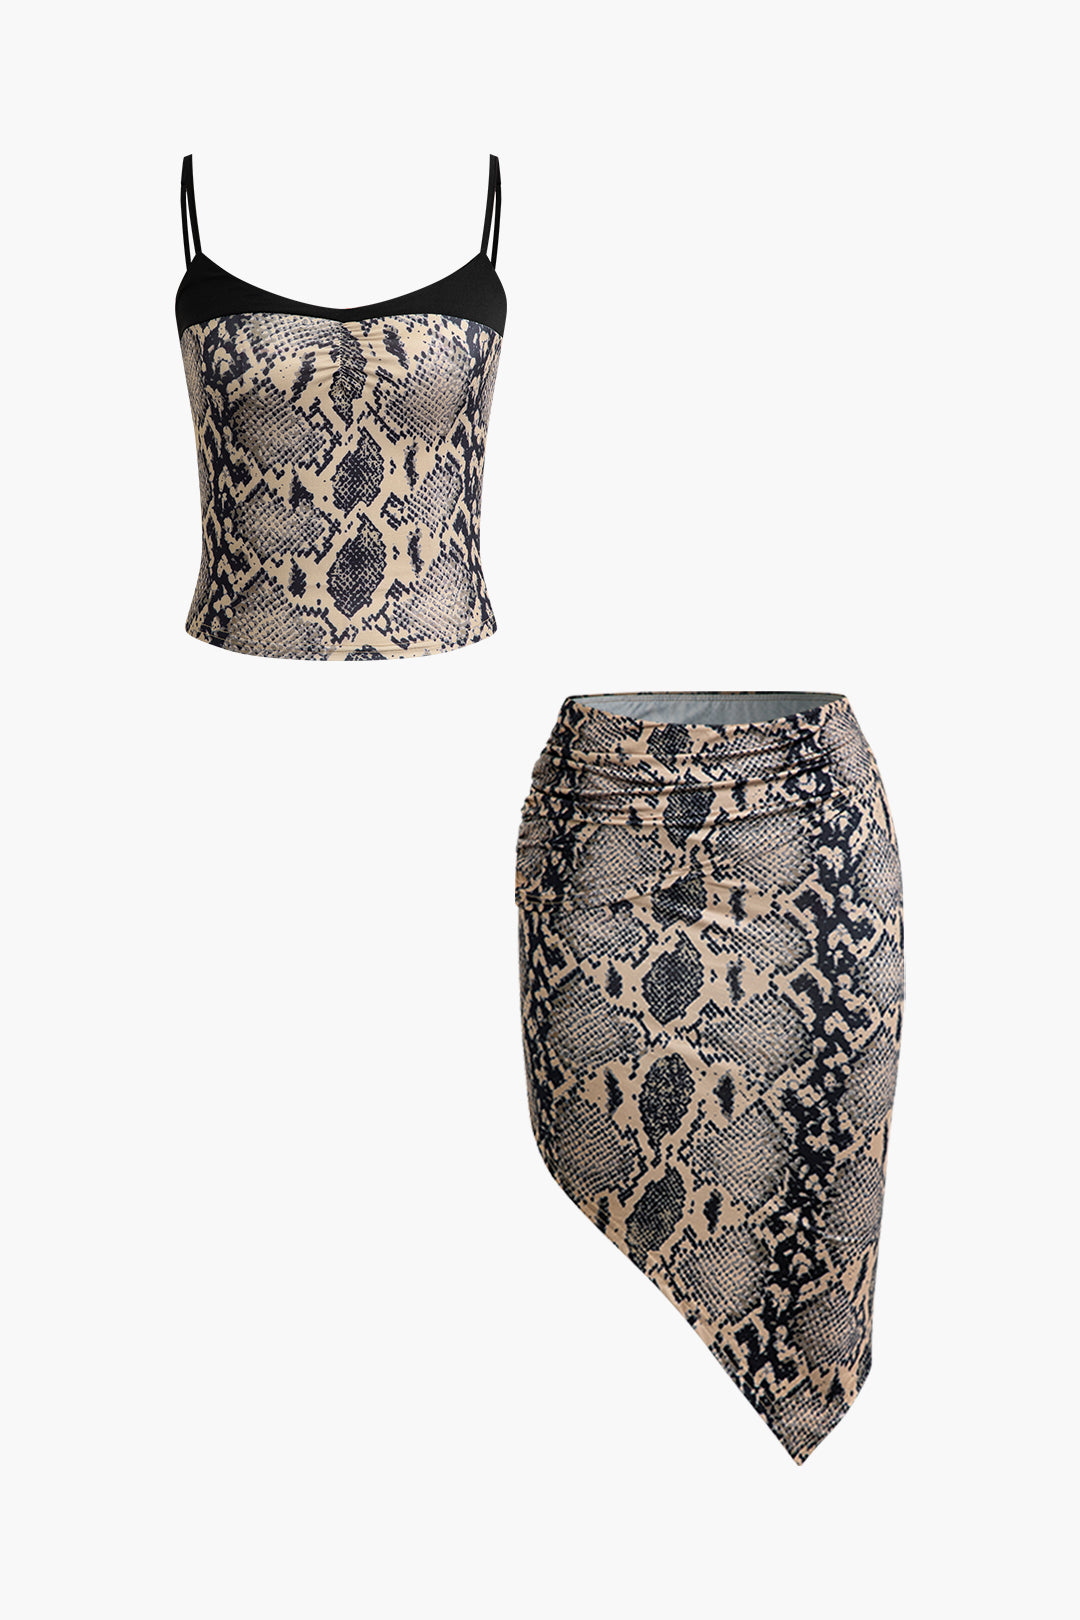 Snake Print Crop Cami Top And Skirt Set